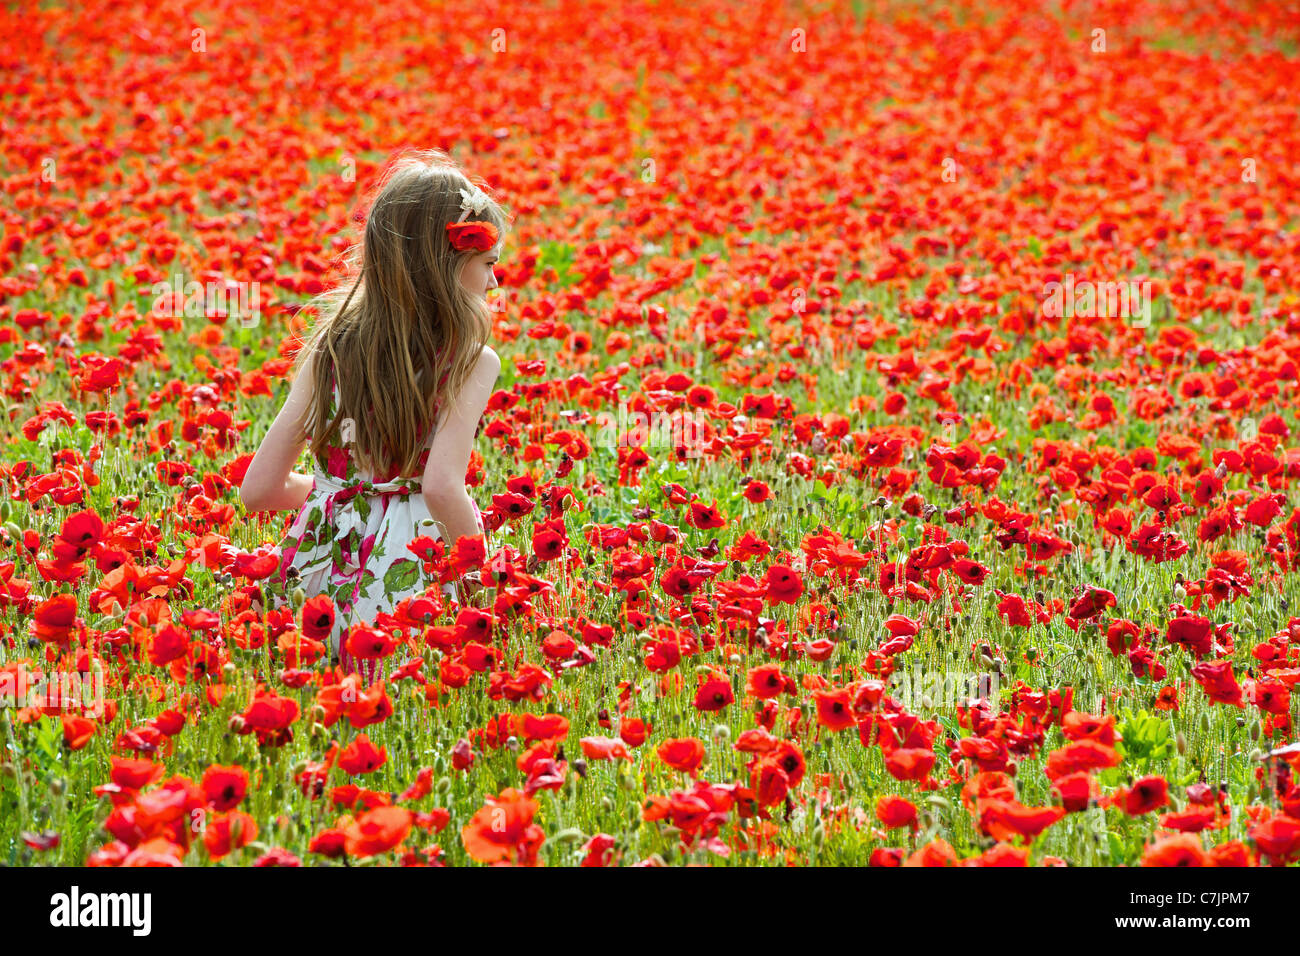 Girl walking in field of flowers Stock Photo